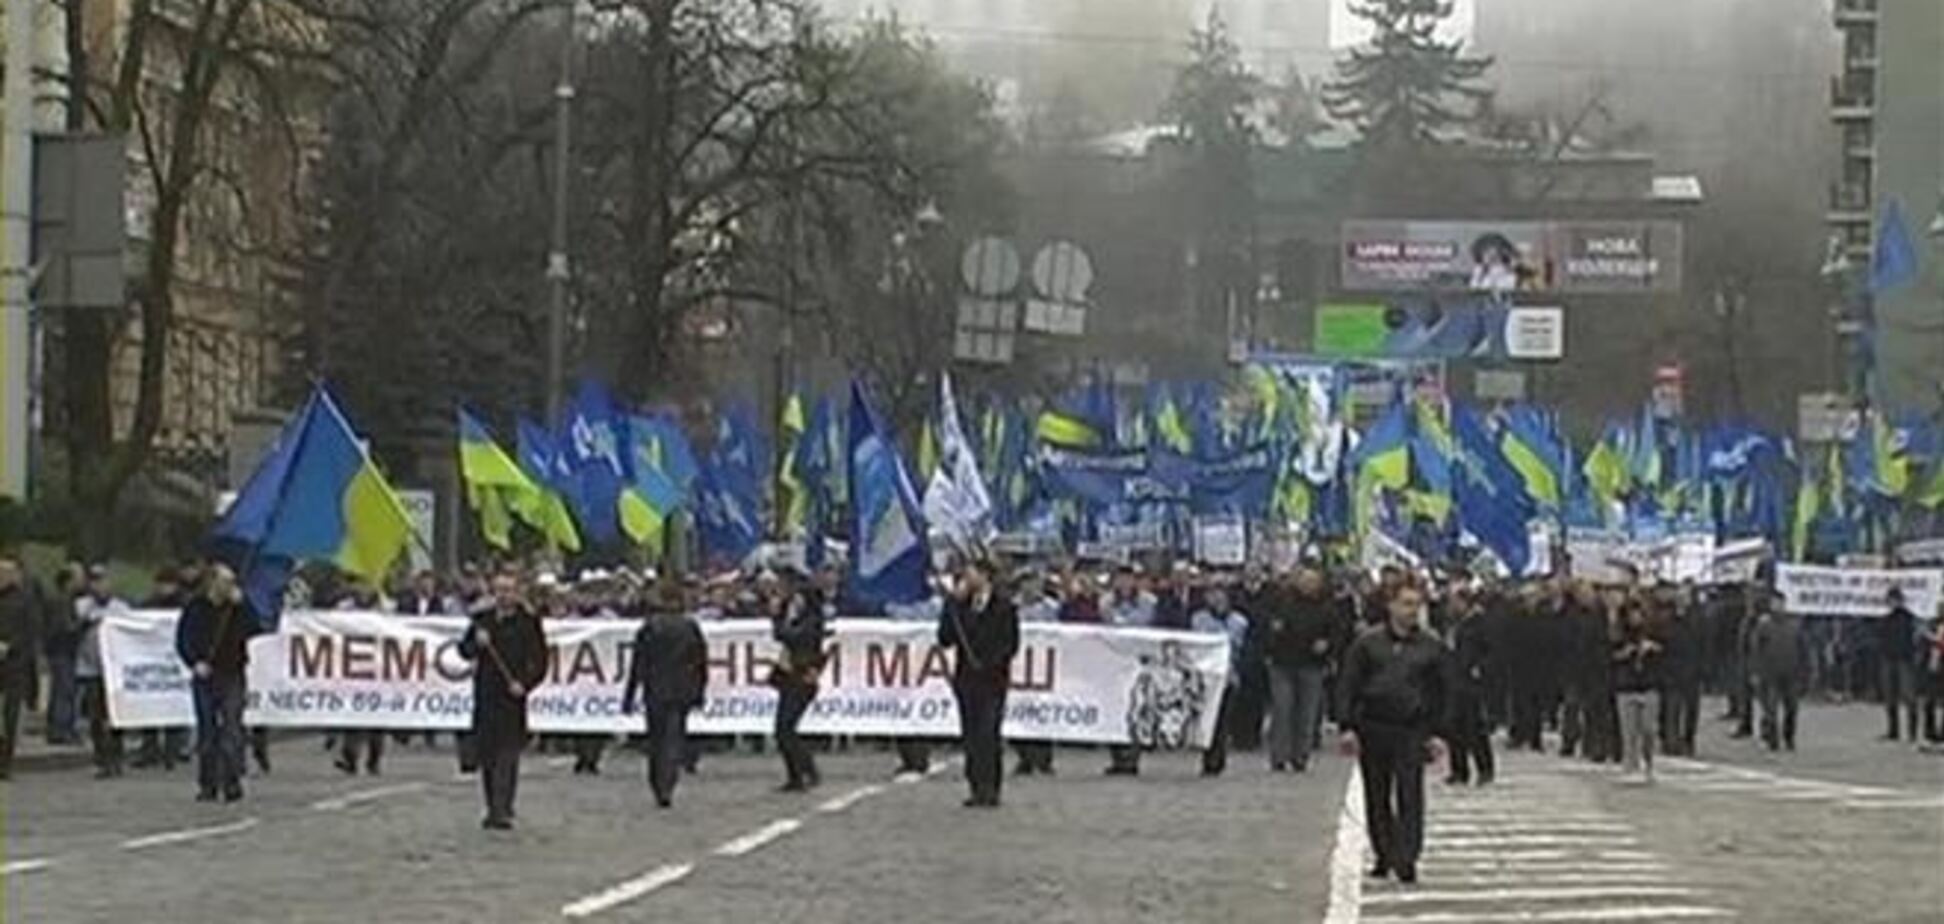 Антифашистский марш в Киеве прошел без нарушений - МВД